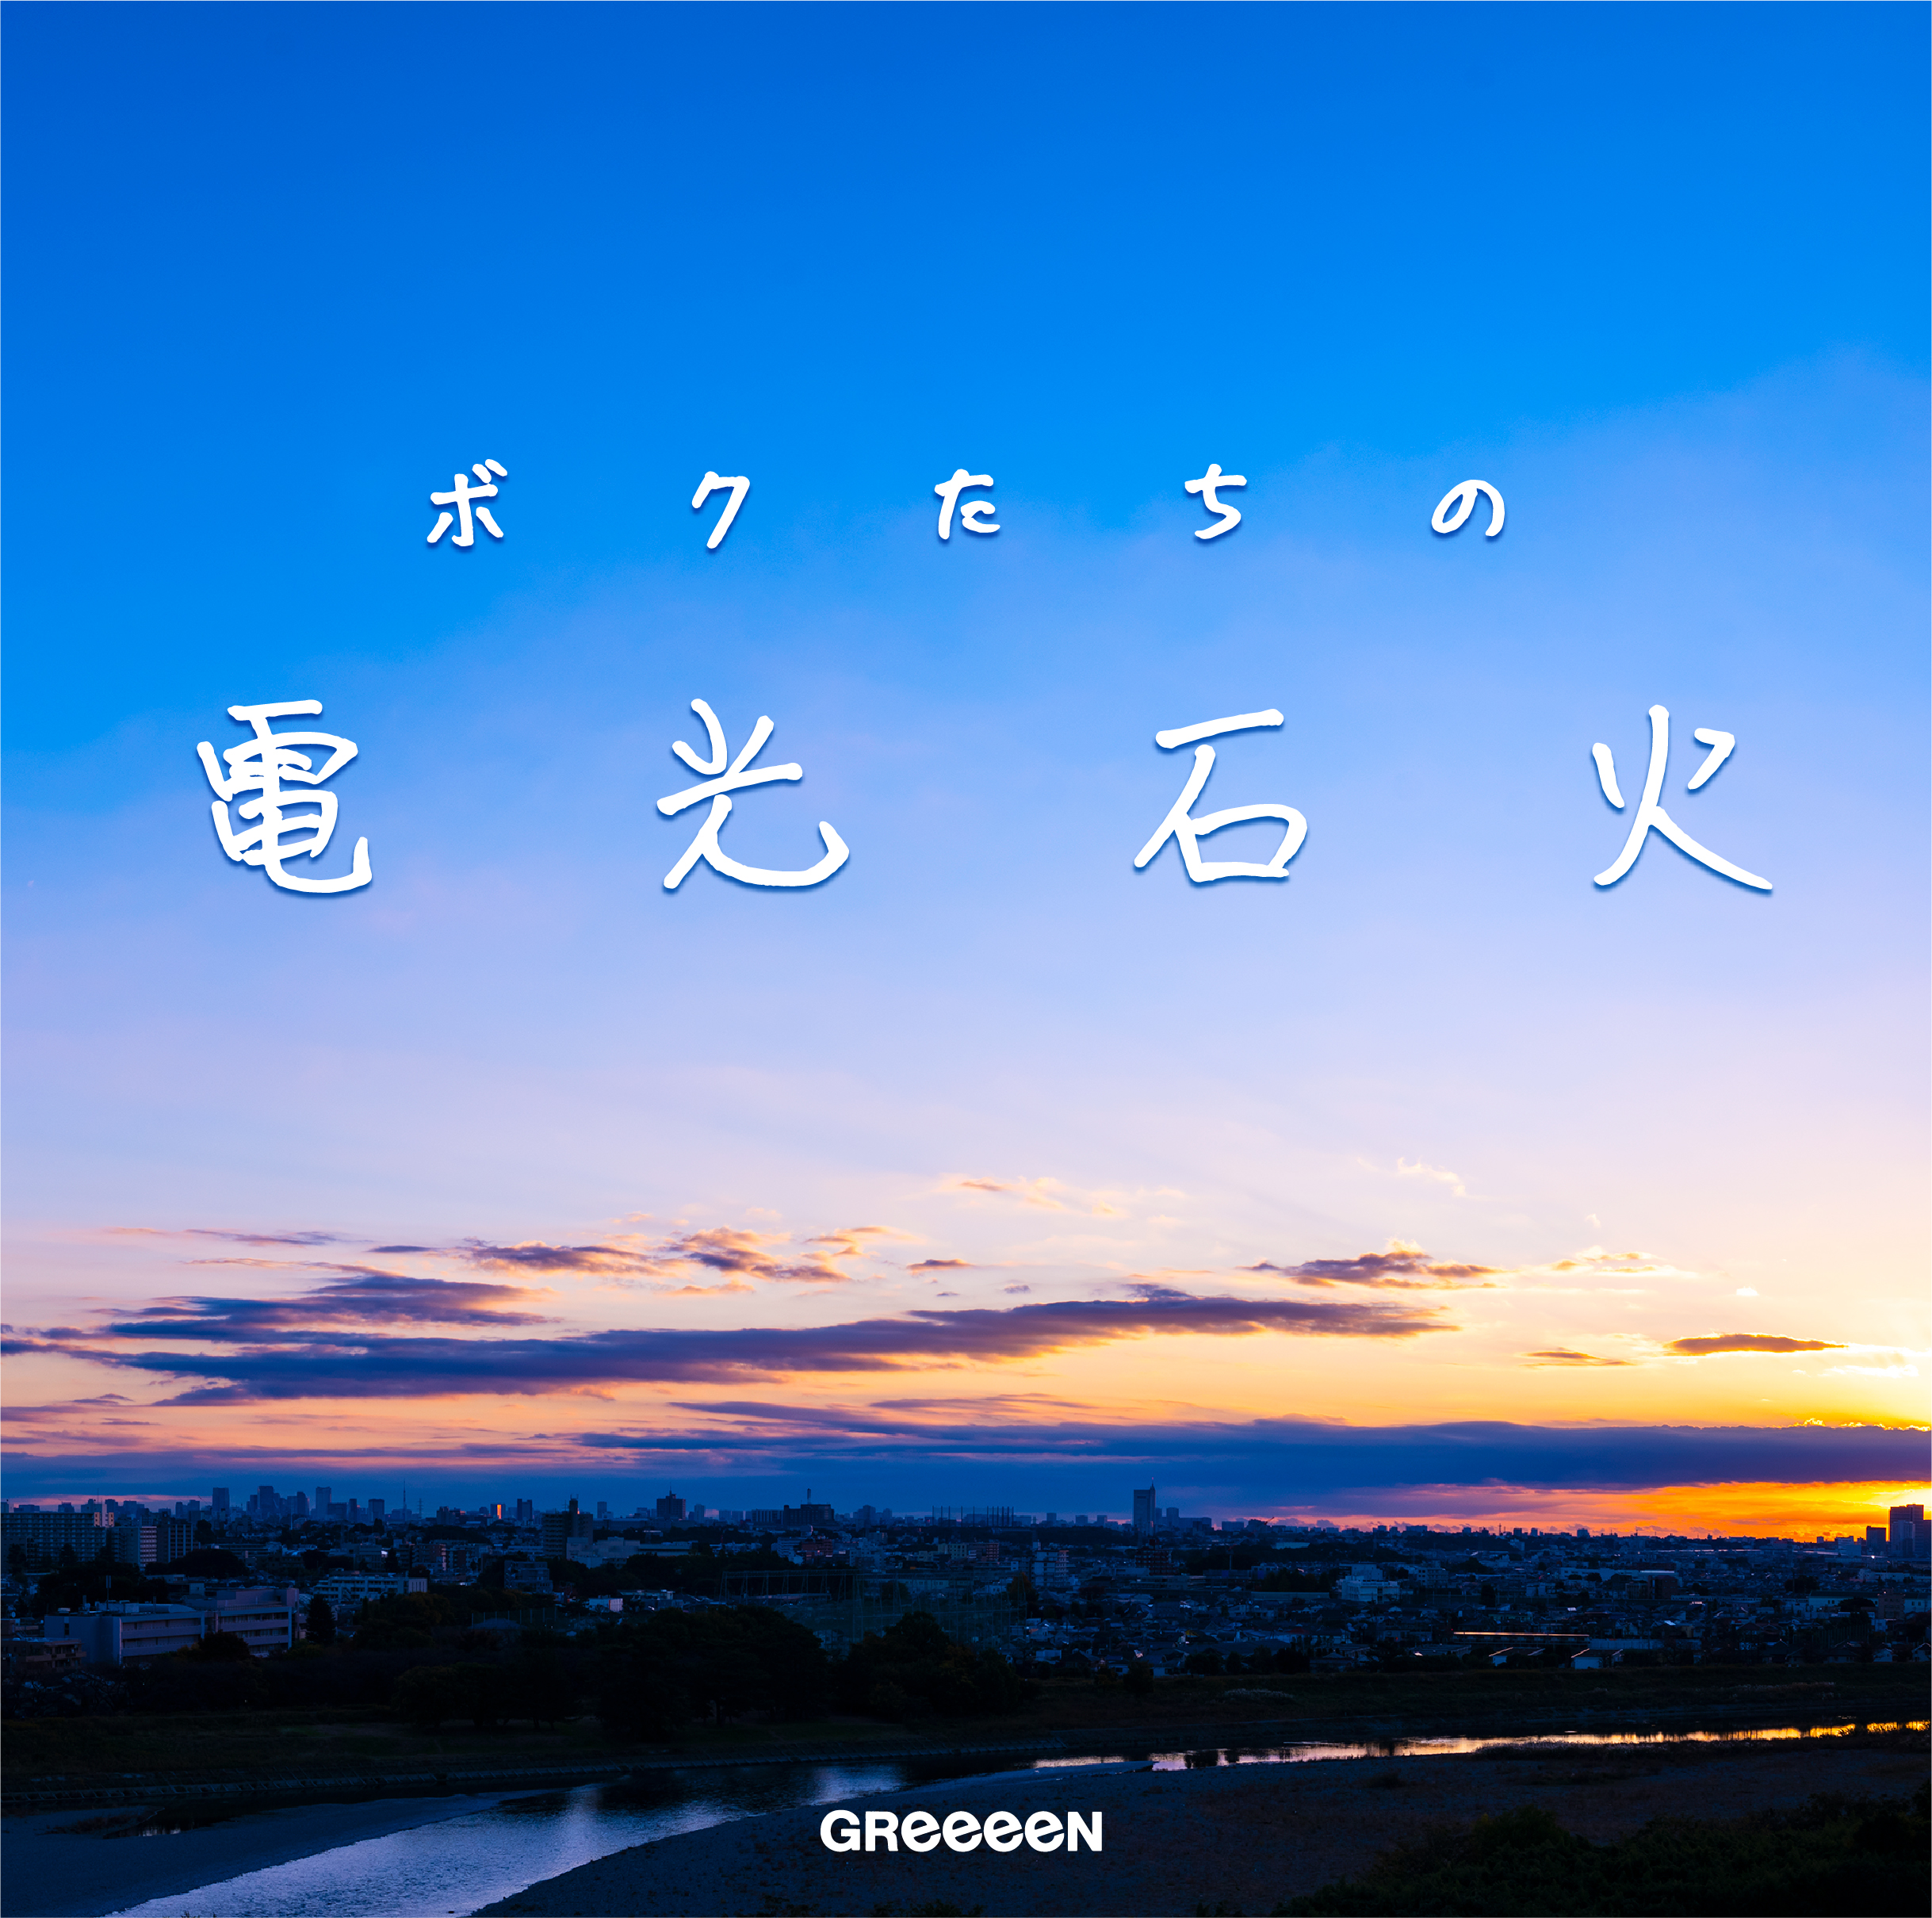 ニューアルバム ボクたちの電光石火 1月6日発売 アルバム題字を内村光良さんが担当 Greeeen